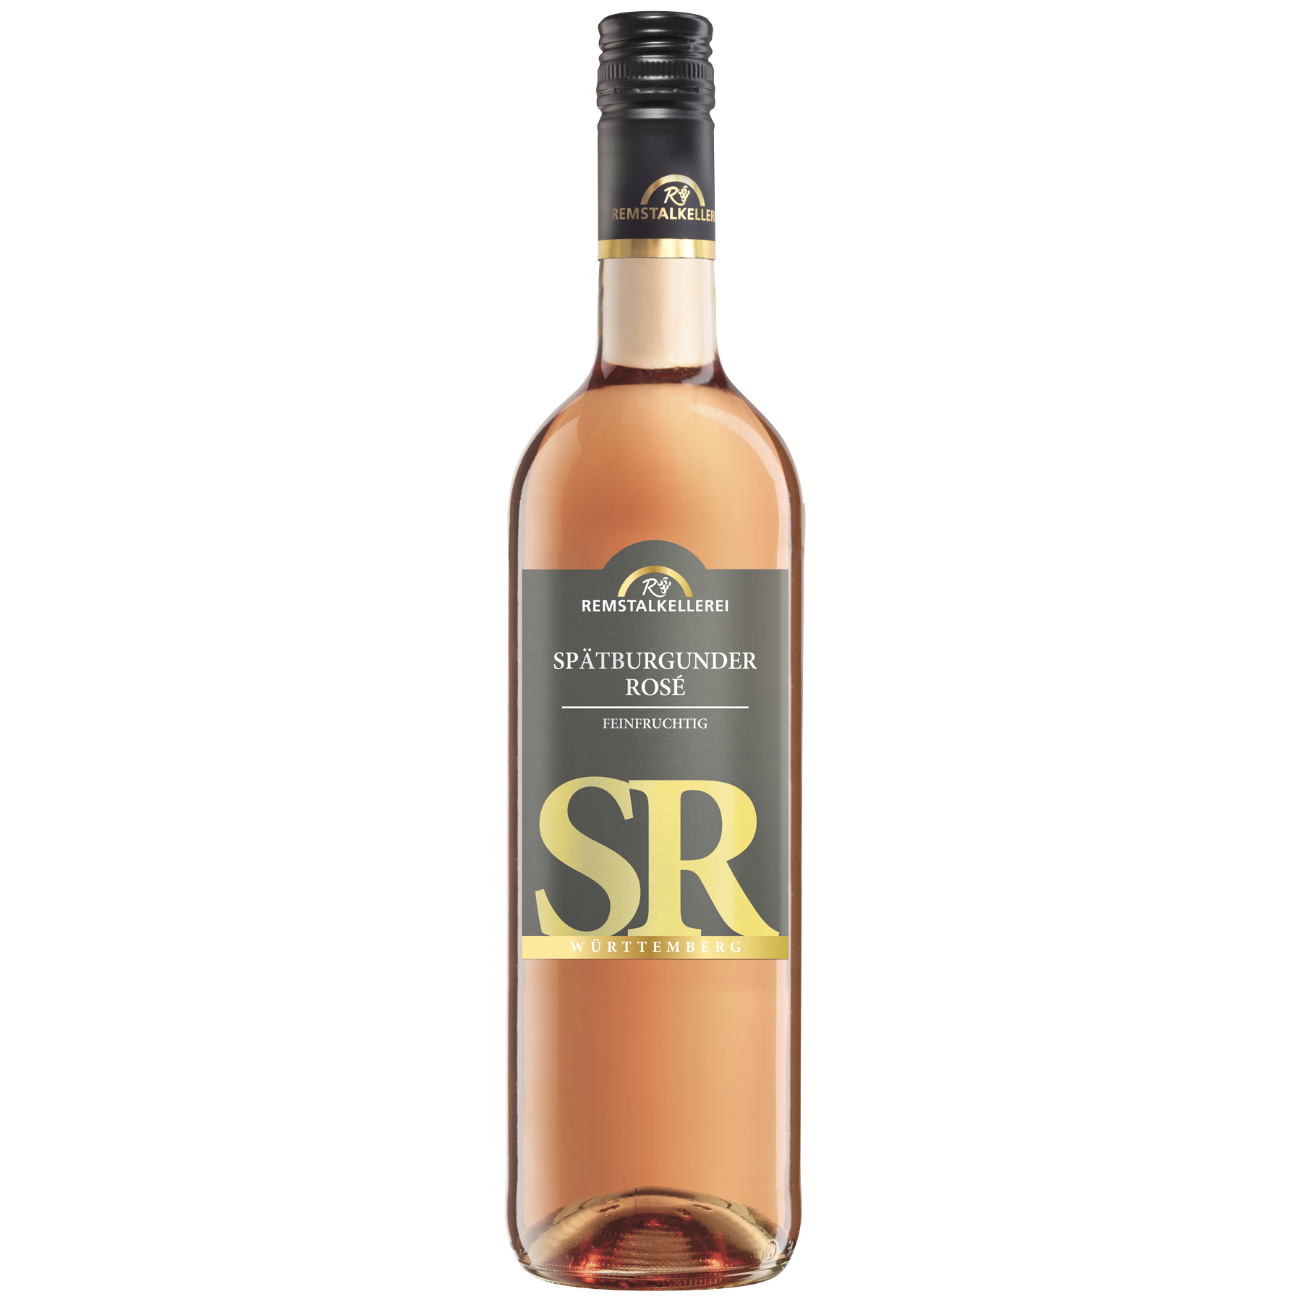 Remstalkellerei Spätburgunder Rosé SR feinfruchtig 0,75 L Roséwein, Württemberger Wein